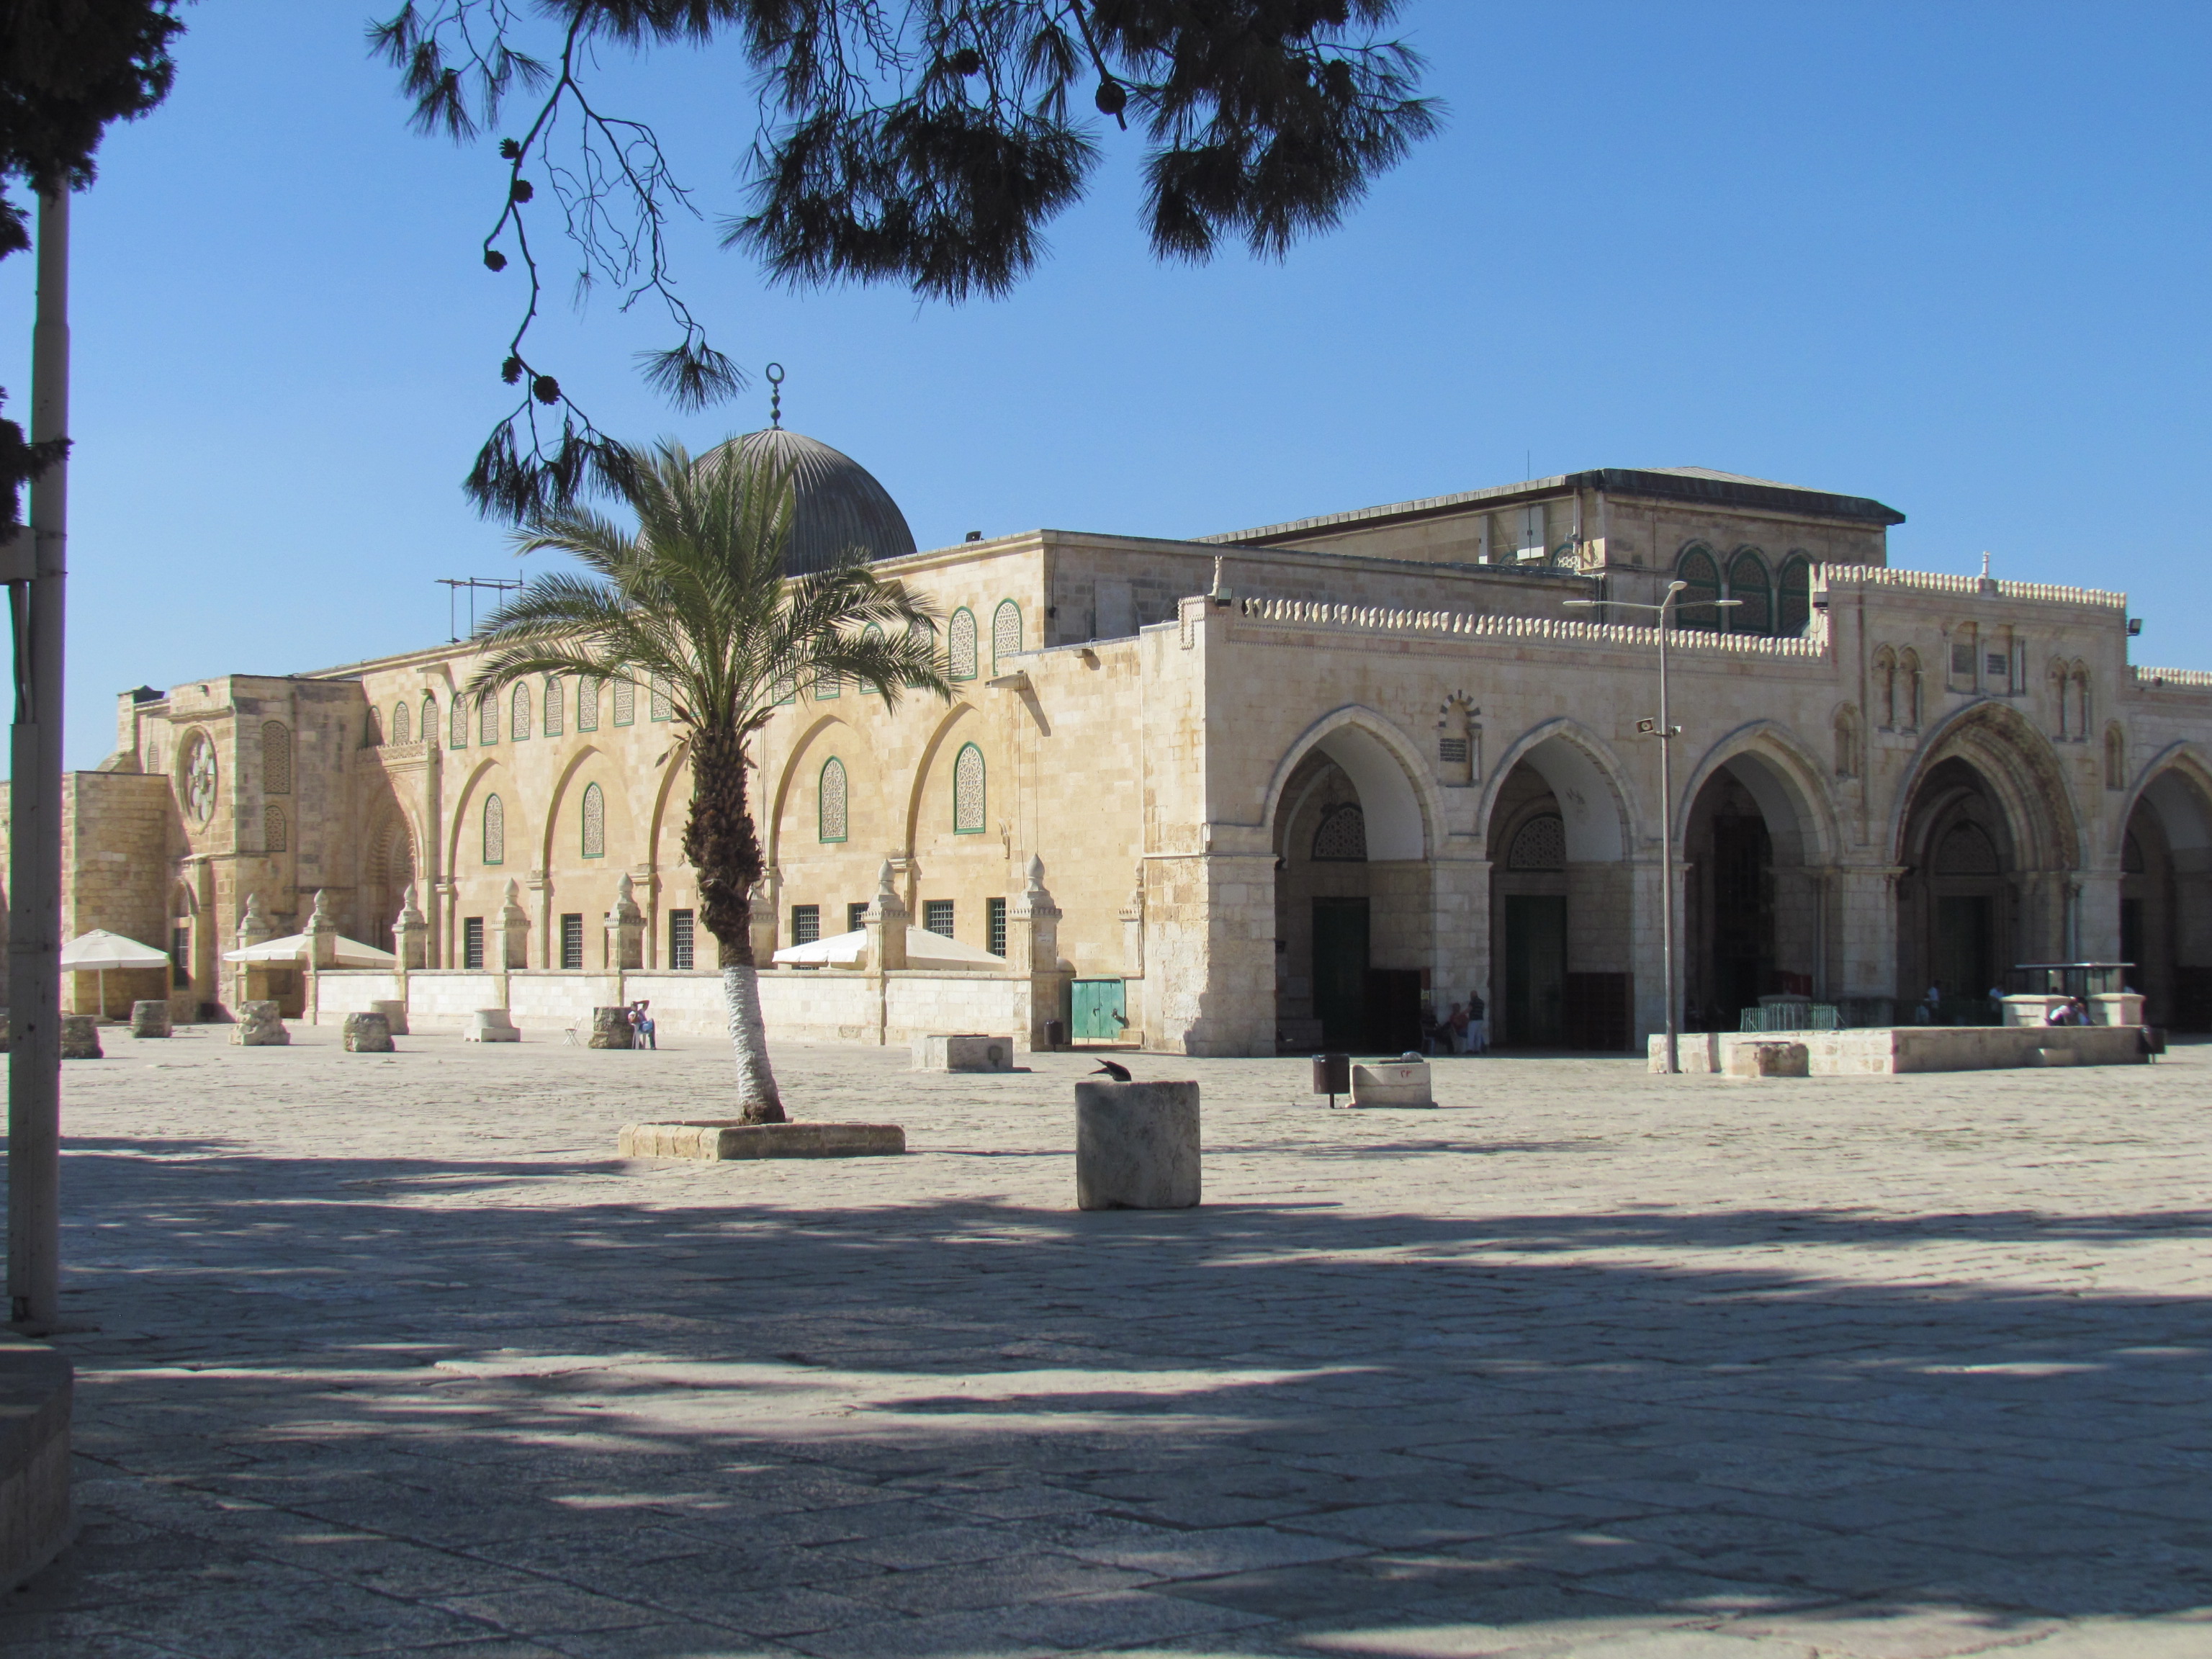 11 Al-Aqsa mosque